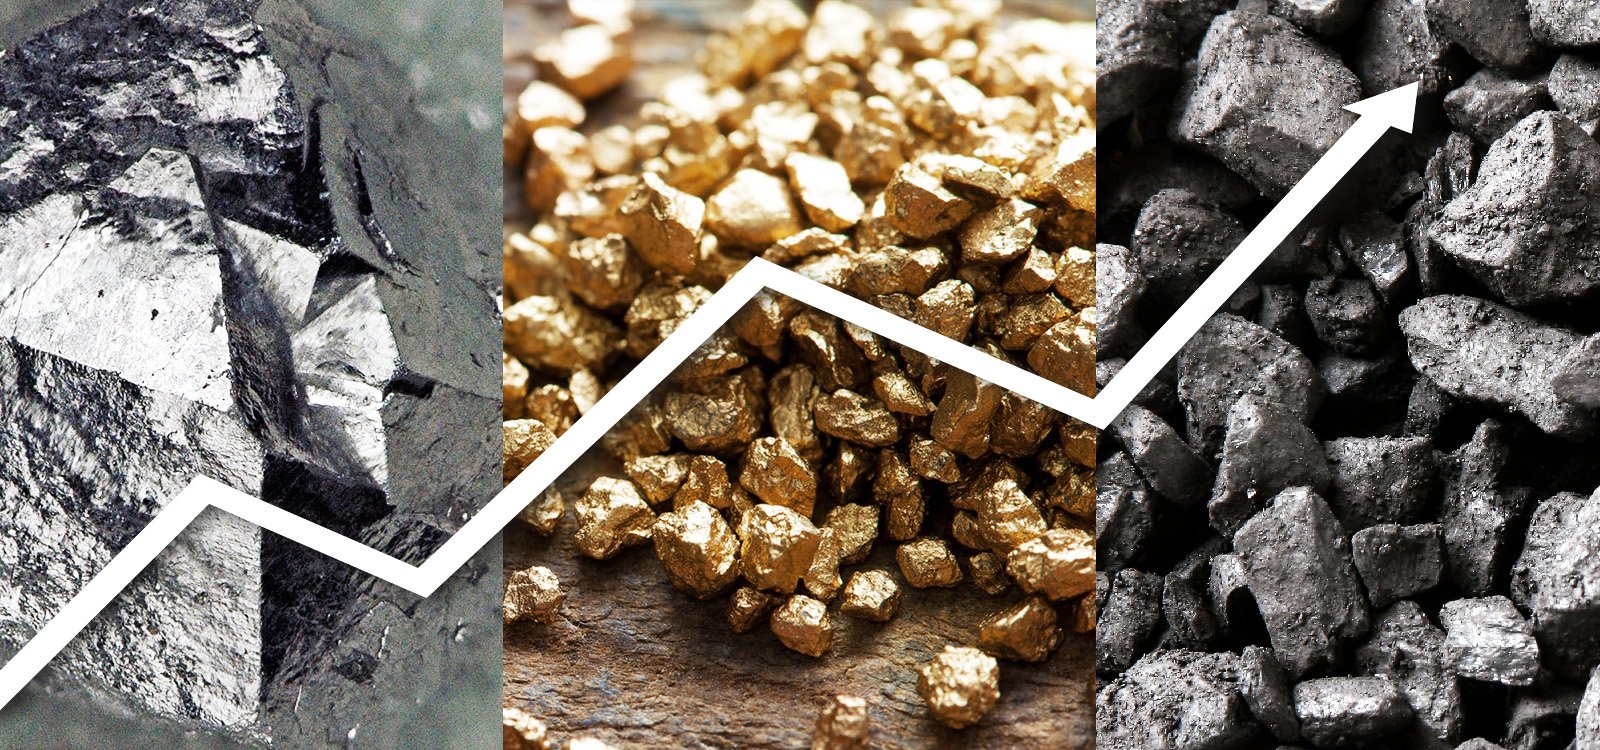 <p>Le cours des matières premières brutes a montré des signes de reprise en 2016 à l’instar de celui du minerai de fer qui a progressé de près de 100 % par rapport au début de l’année.</p>
